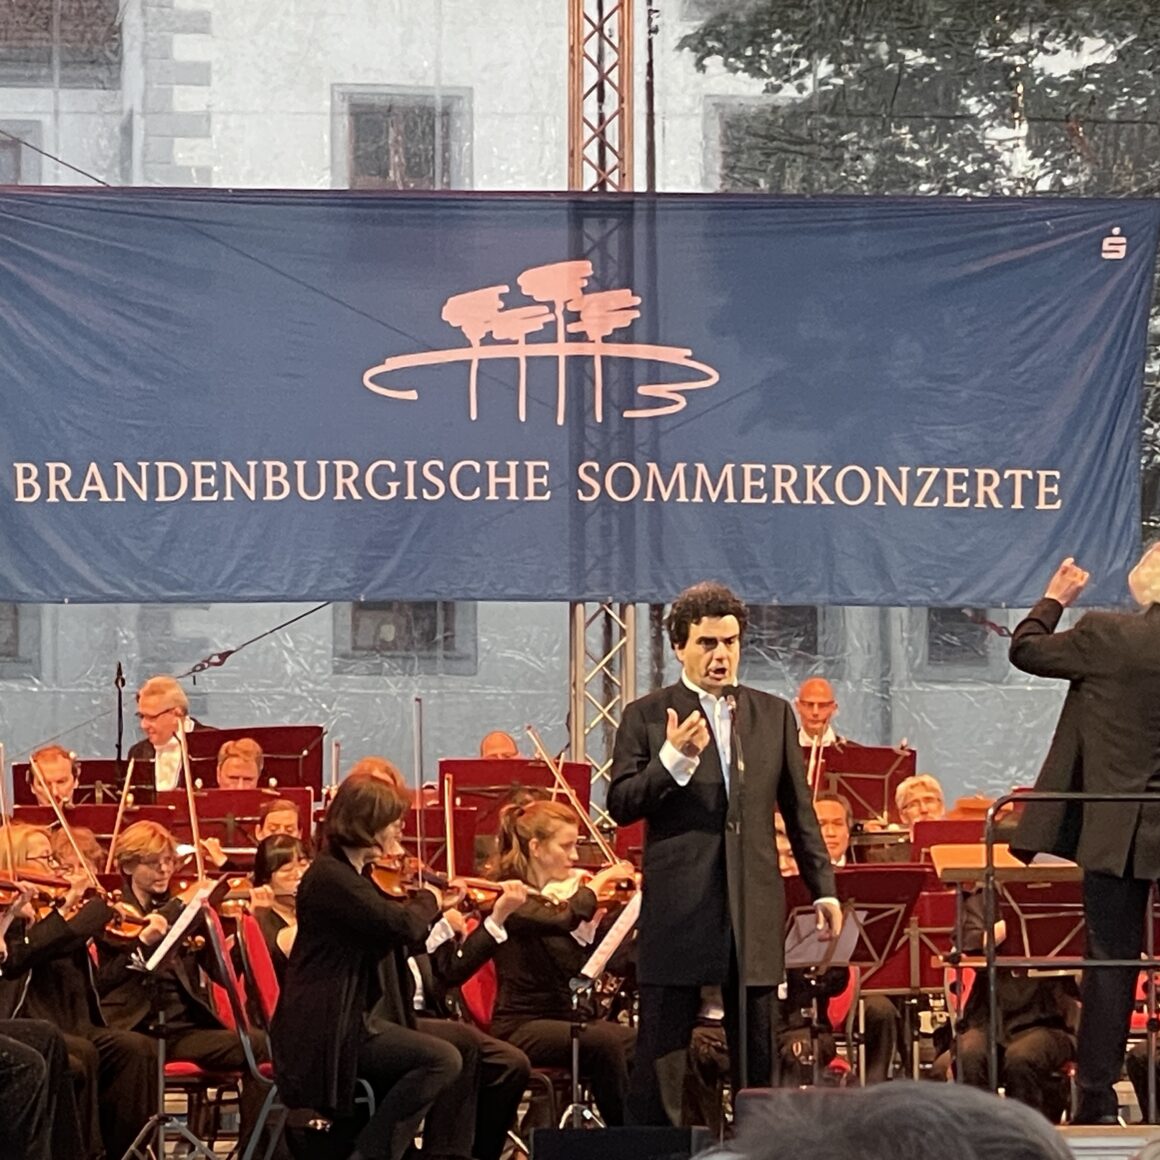 Rolando Villazón beim Brandenburgischem Sommerkonzert in der Klosterschänke Doberlug